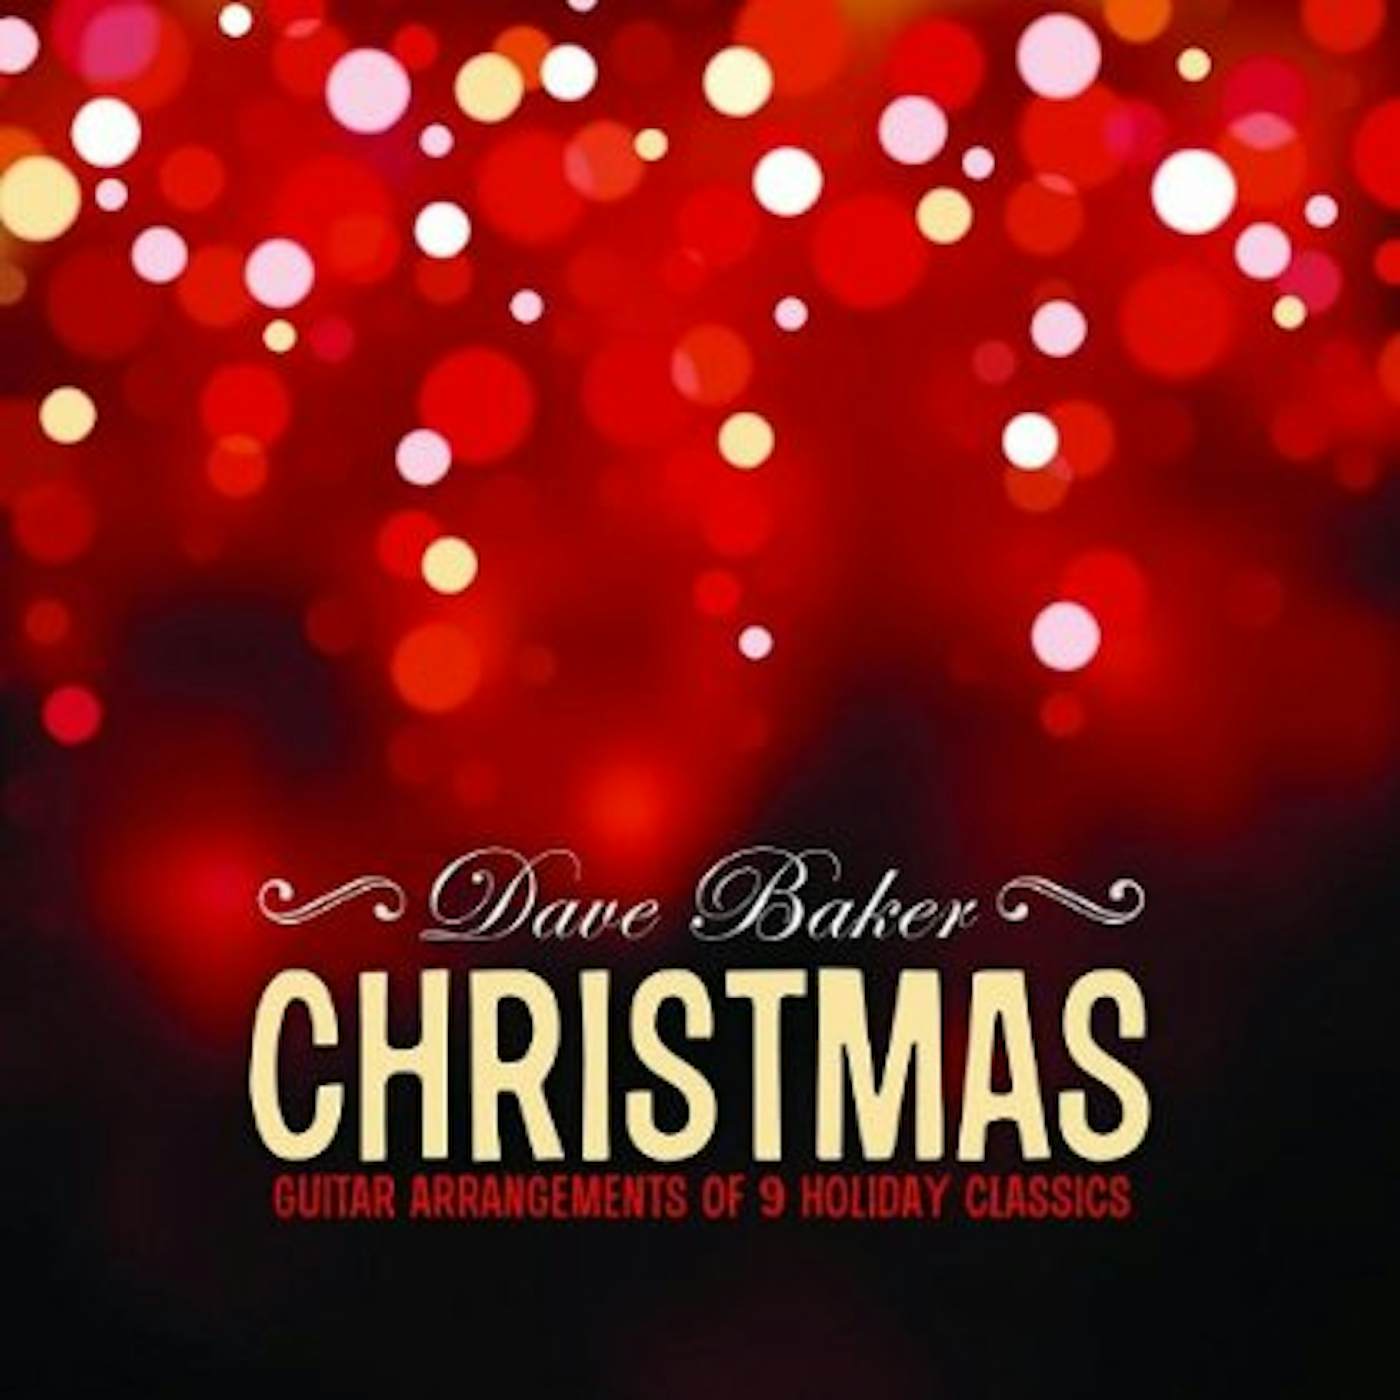 Dave Baker CHRISTMAS CD